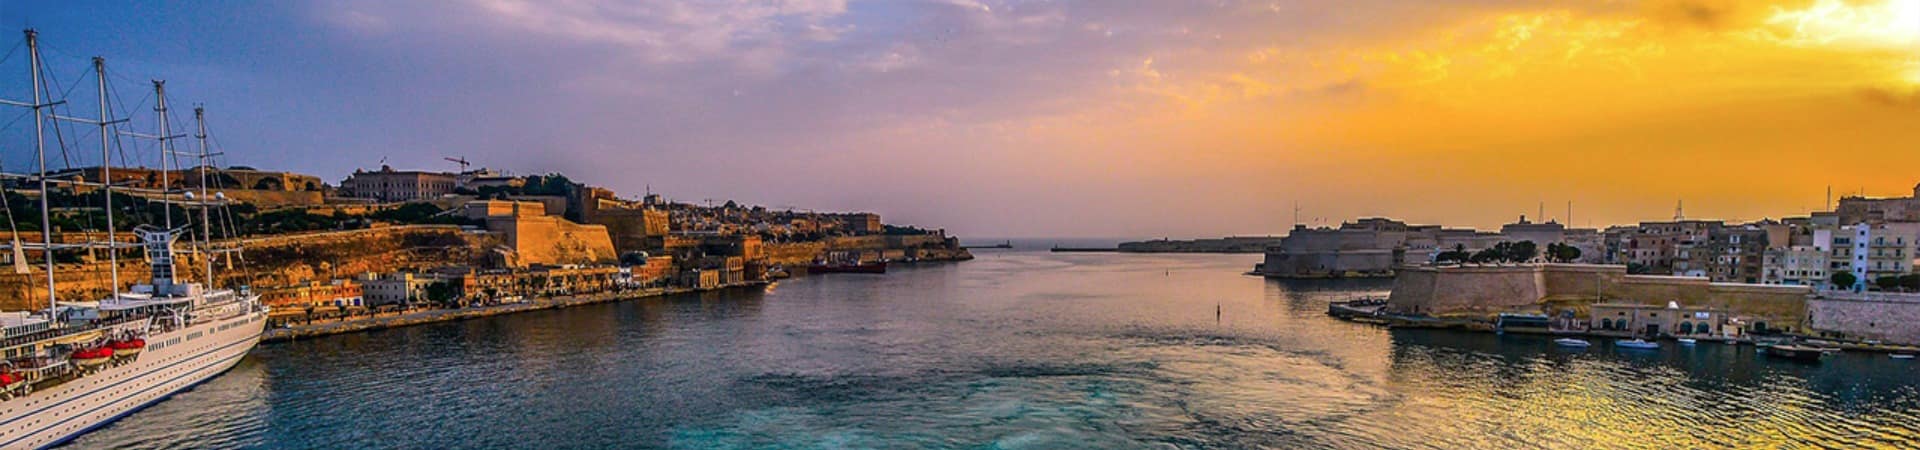 Malta porto